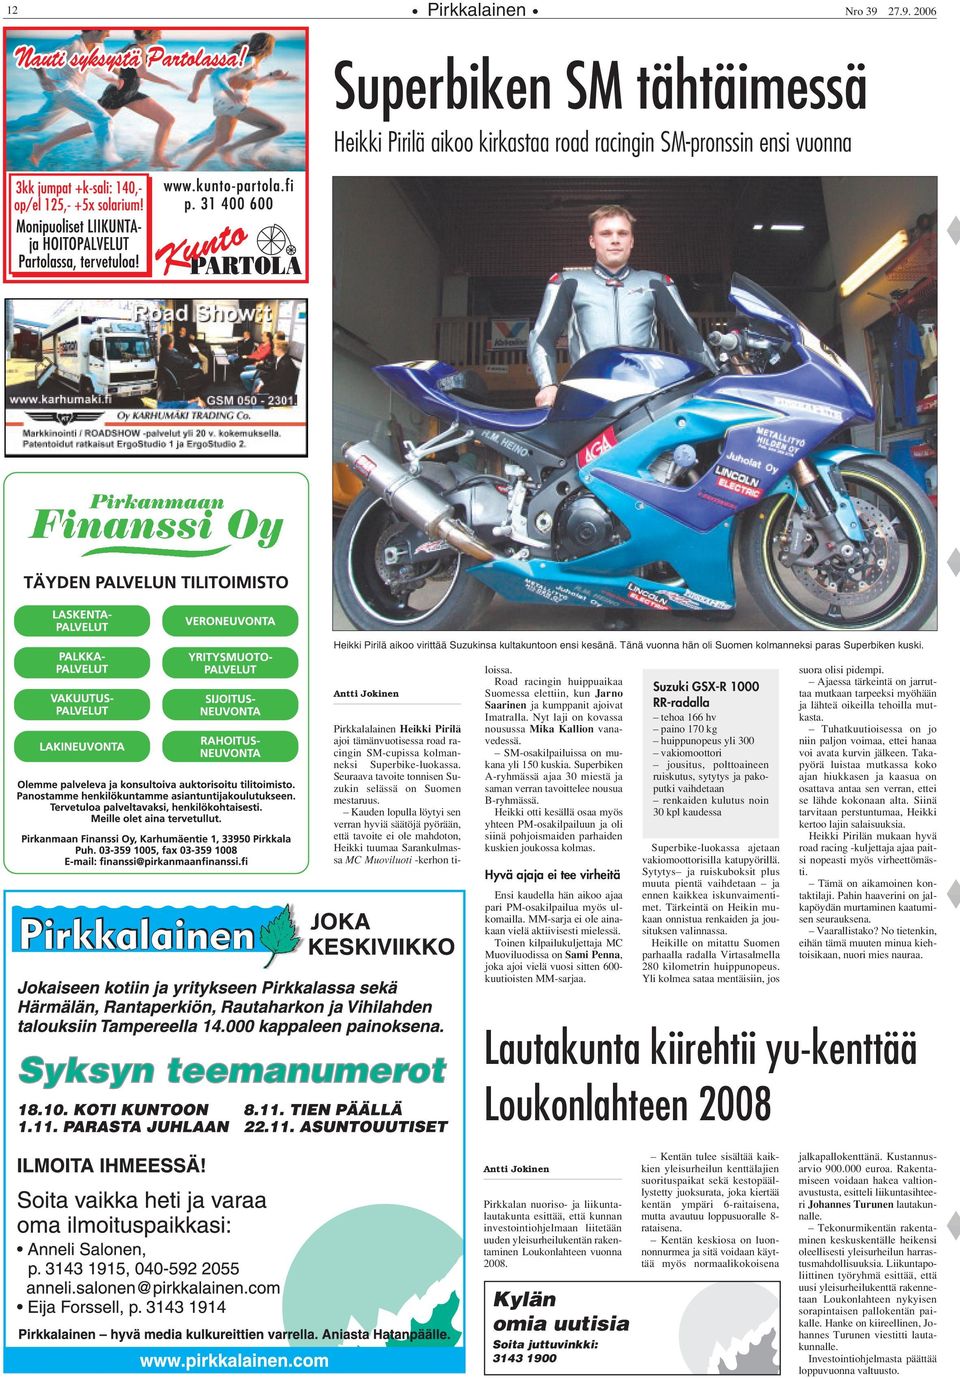 Seuraava tavoite tonnisen Suzukin selässä on Suomen mestaruus.